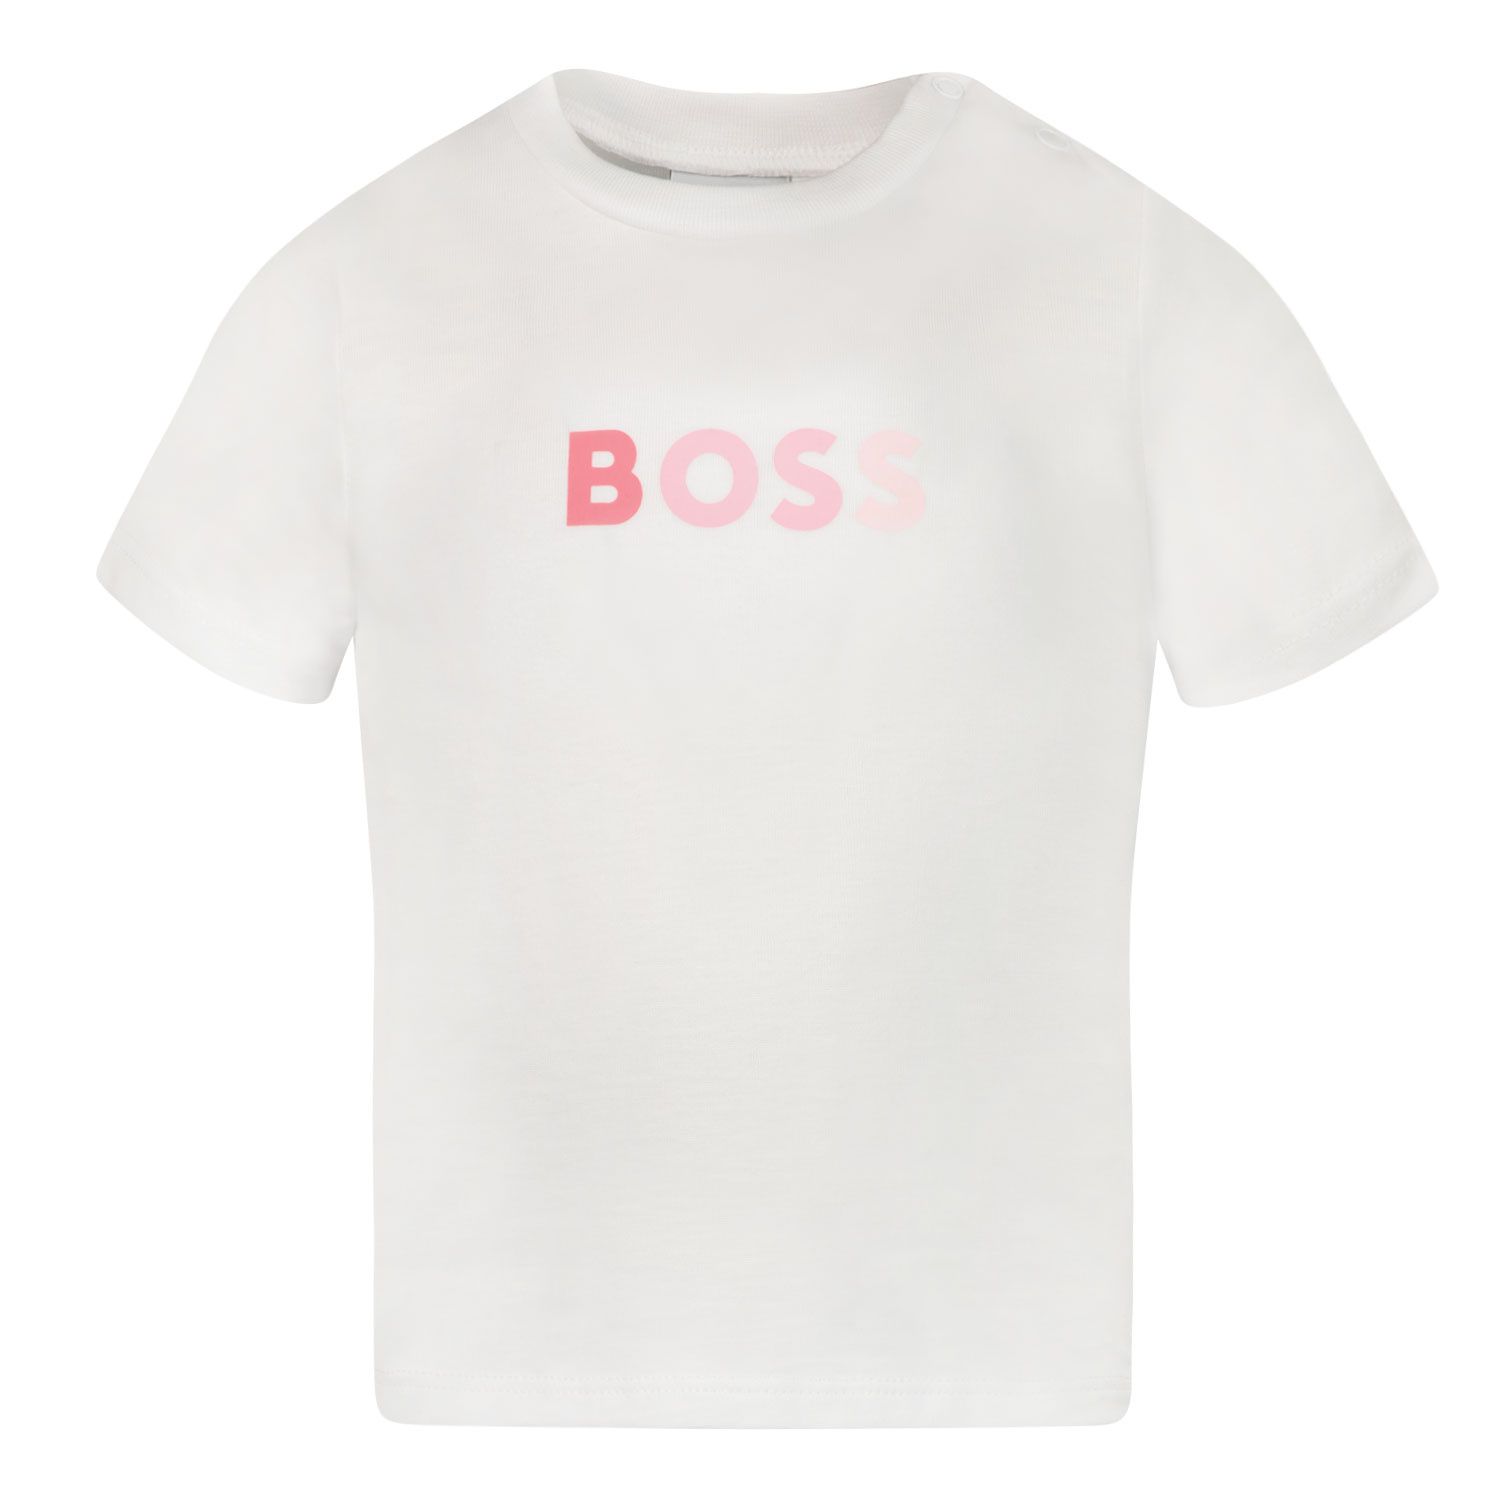 Afbeelding van Boss J95334 baby t-shirt wit